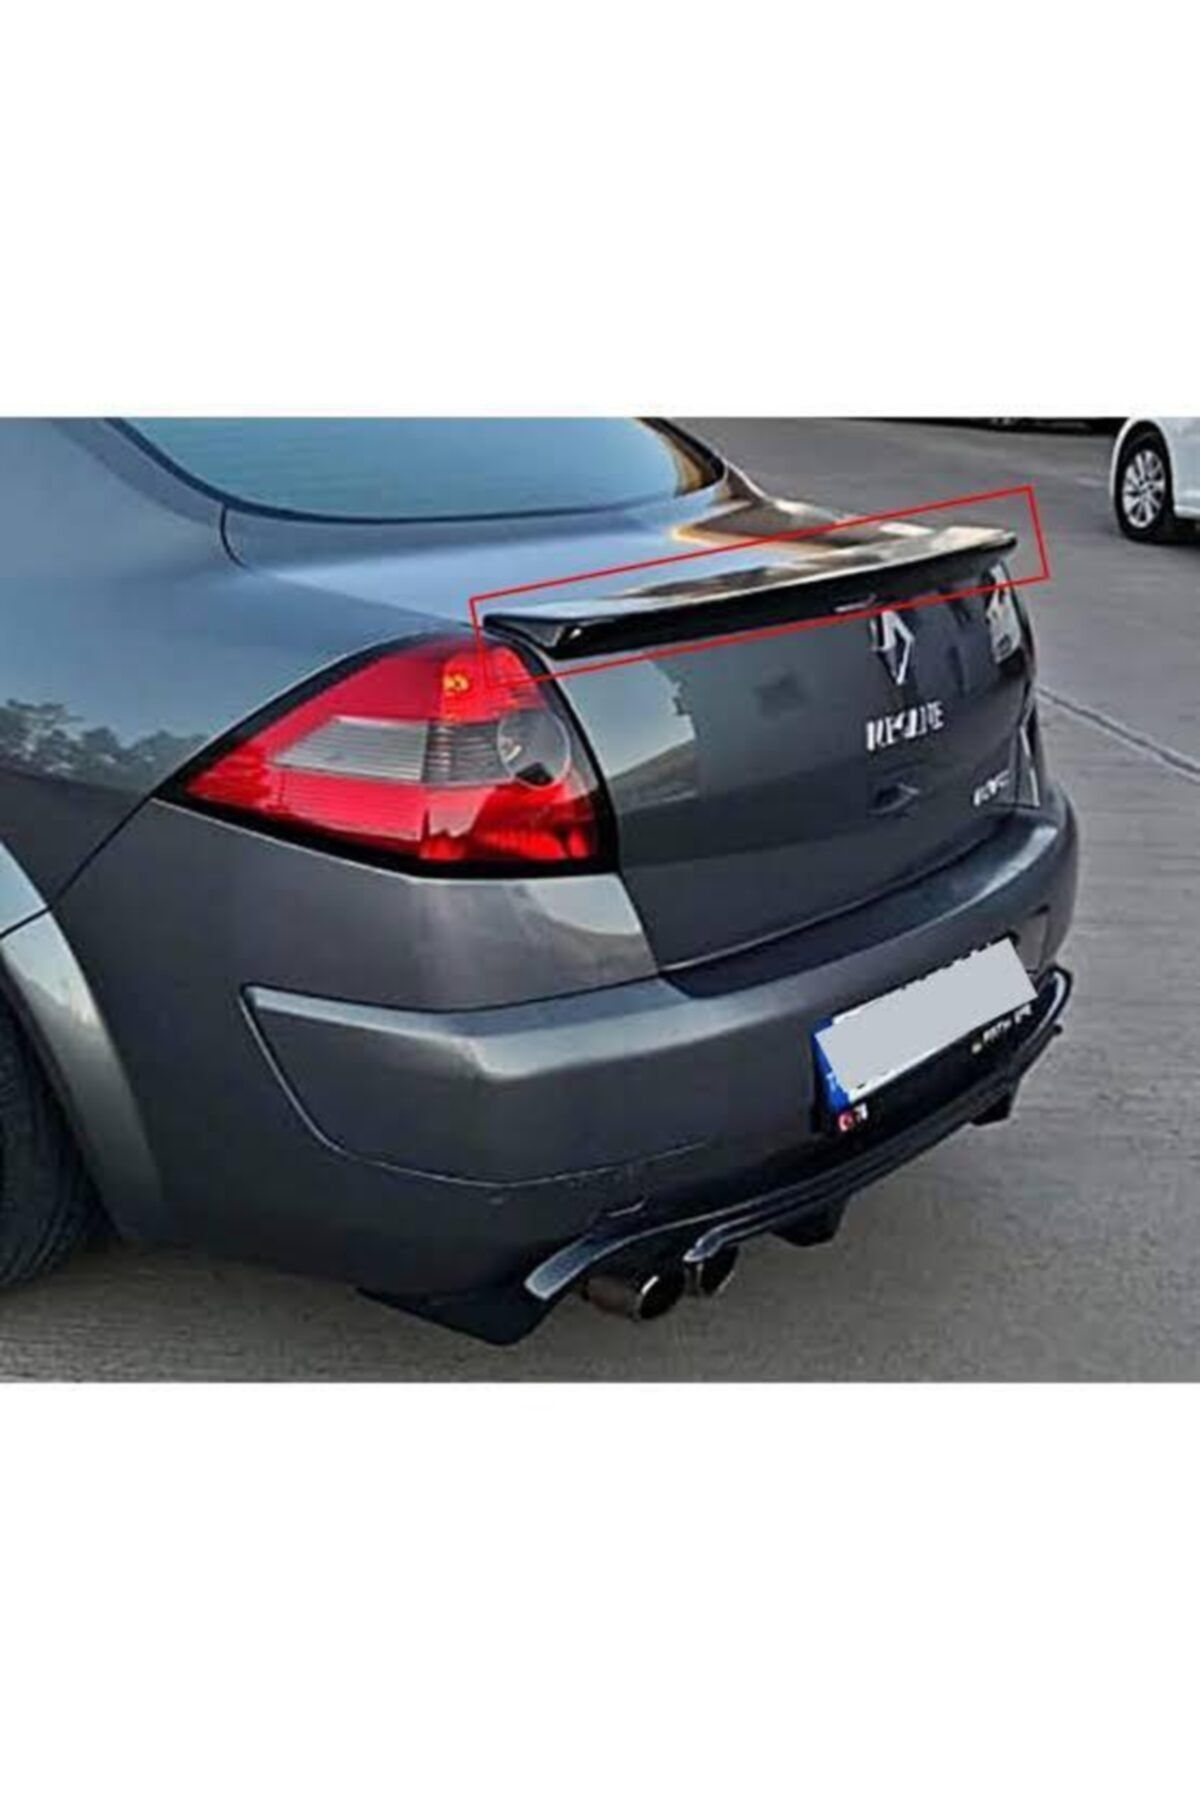 Detay Garaj Renault Megane 2 Spoyler Fiber Fırınlı Boyalı Siyah